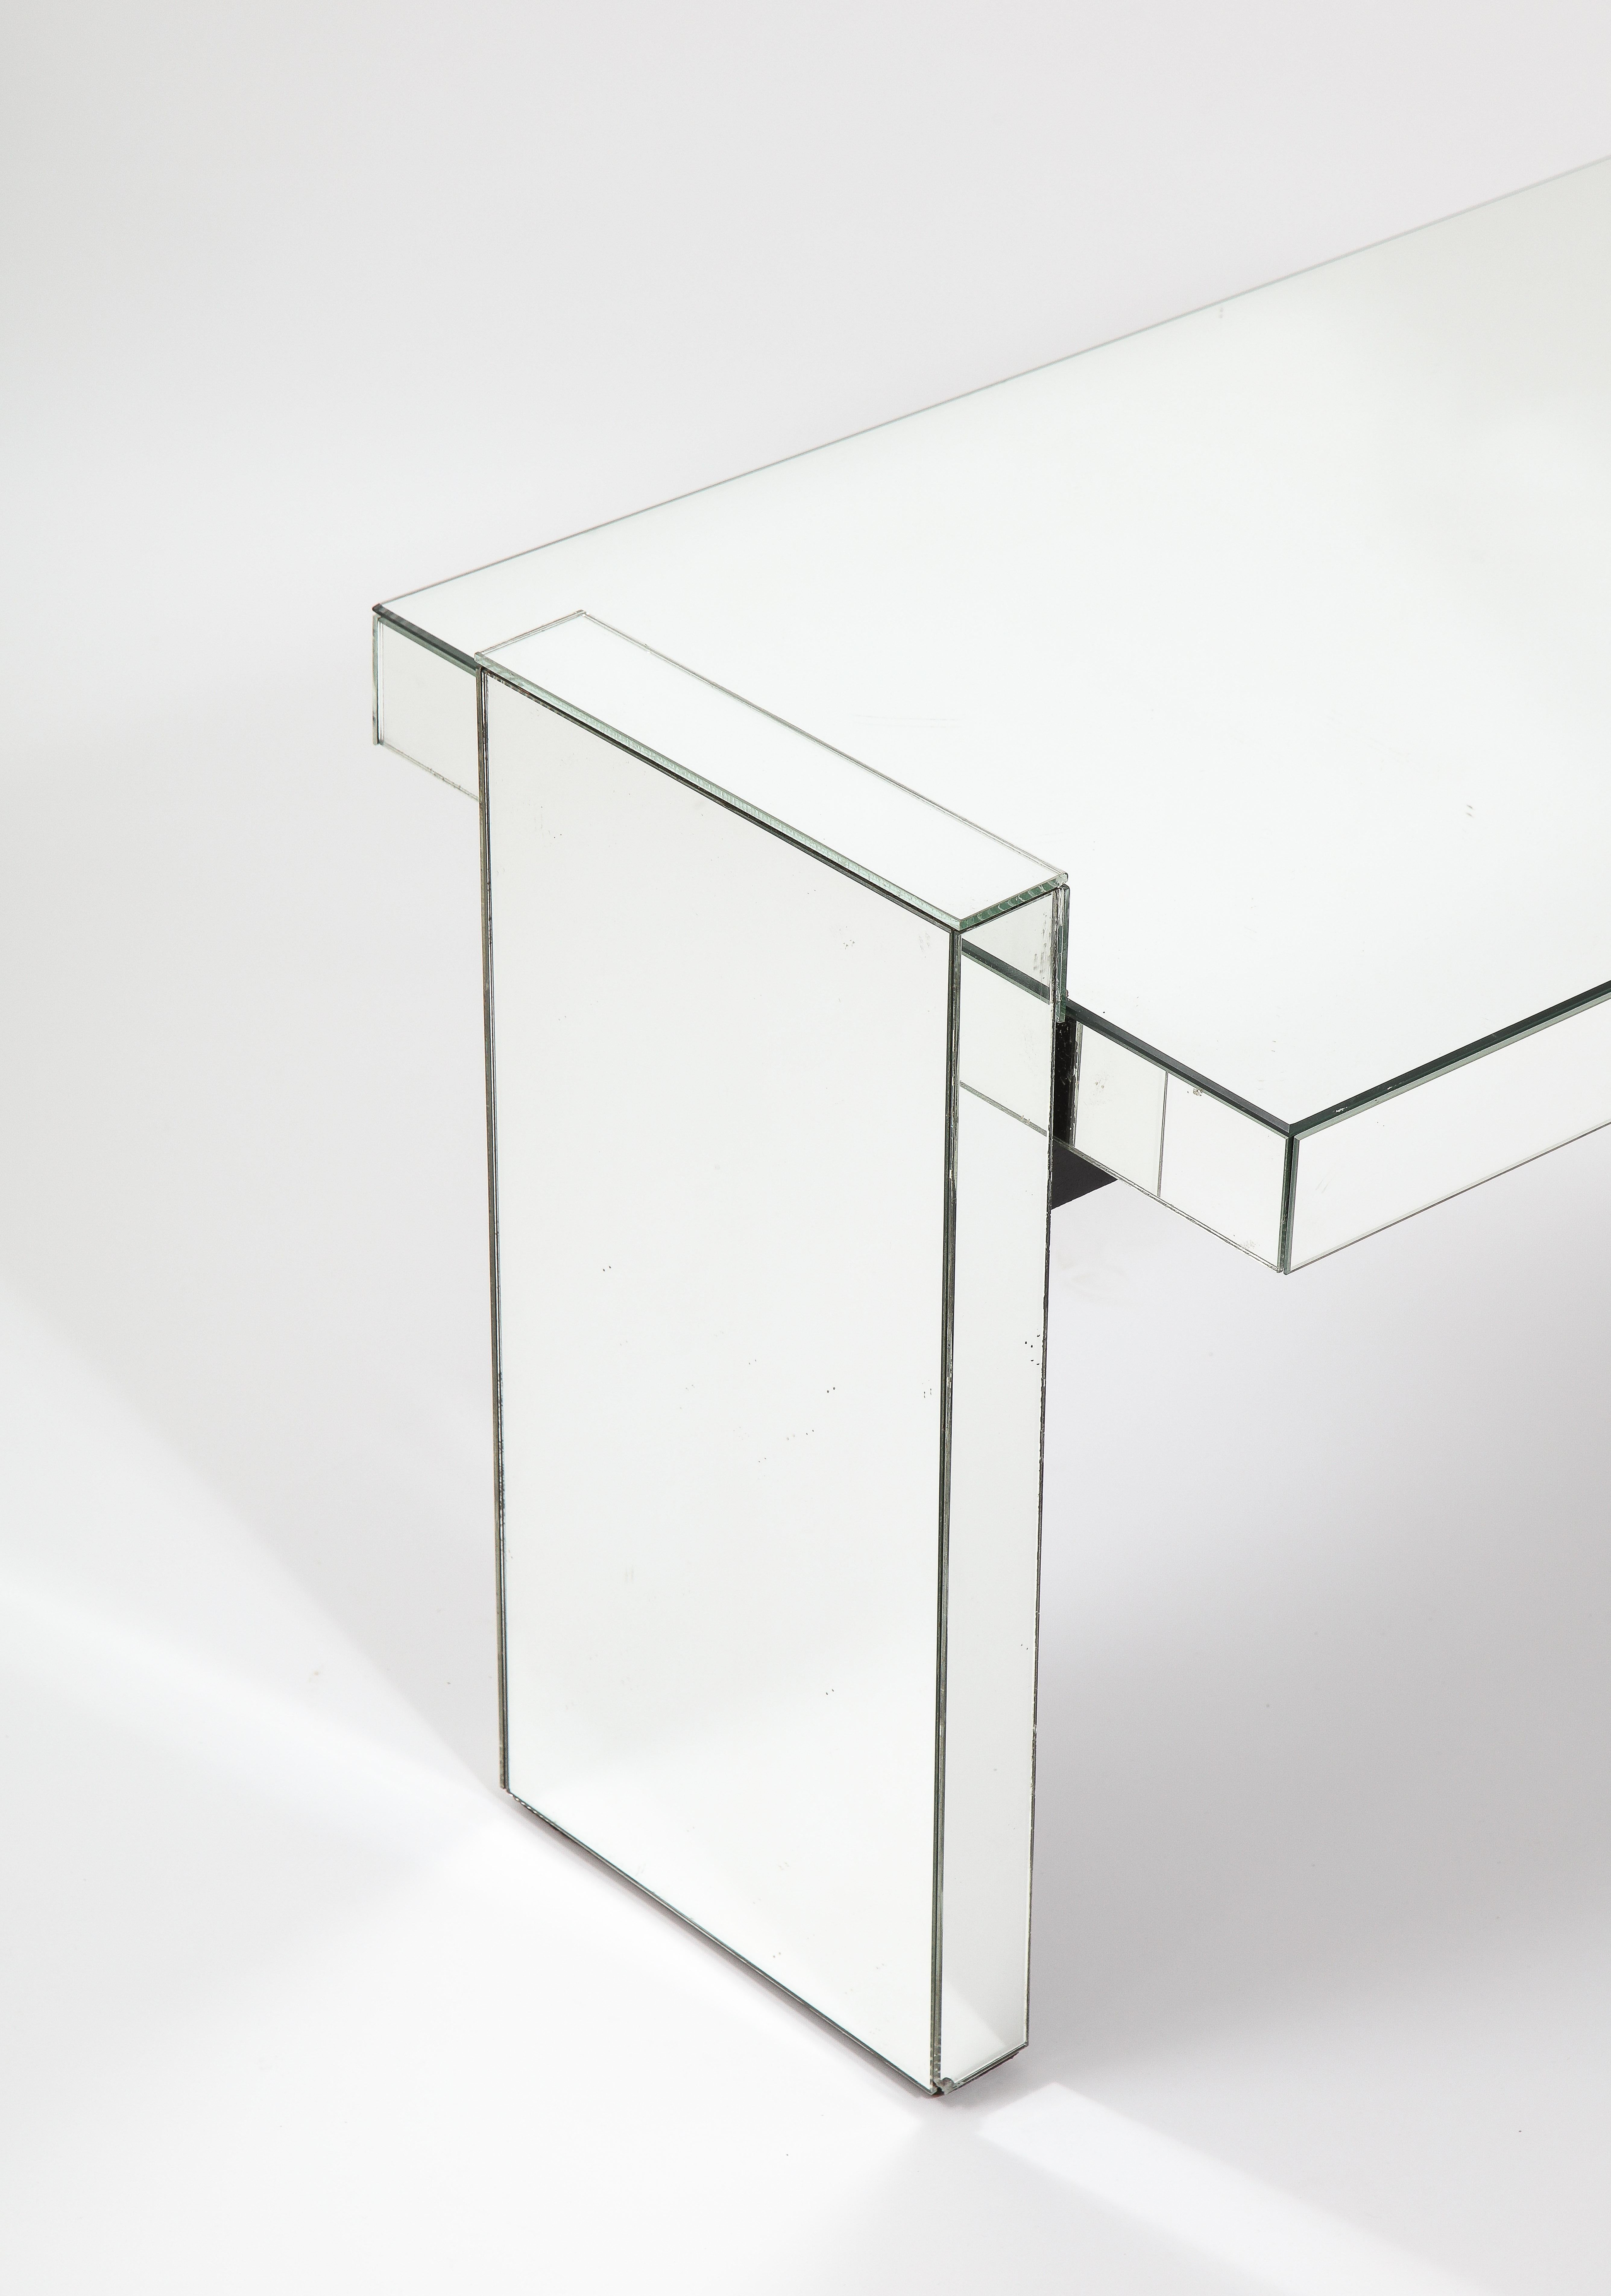 Ein Spiegeltisch von Jacques Adnet in der klassischen Sprache des Künstlers, eine einfache, aber starke Form, die mit Spiegeln verkleidet ist.